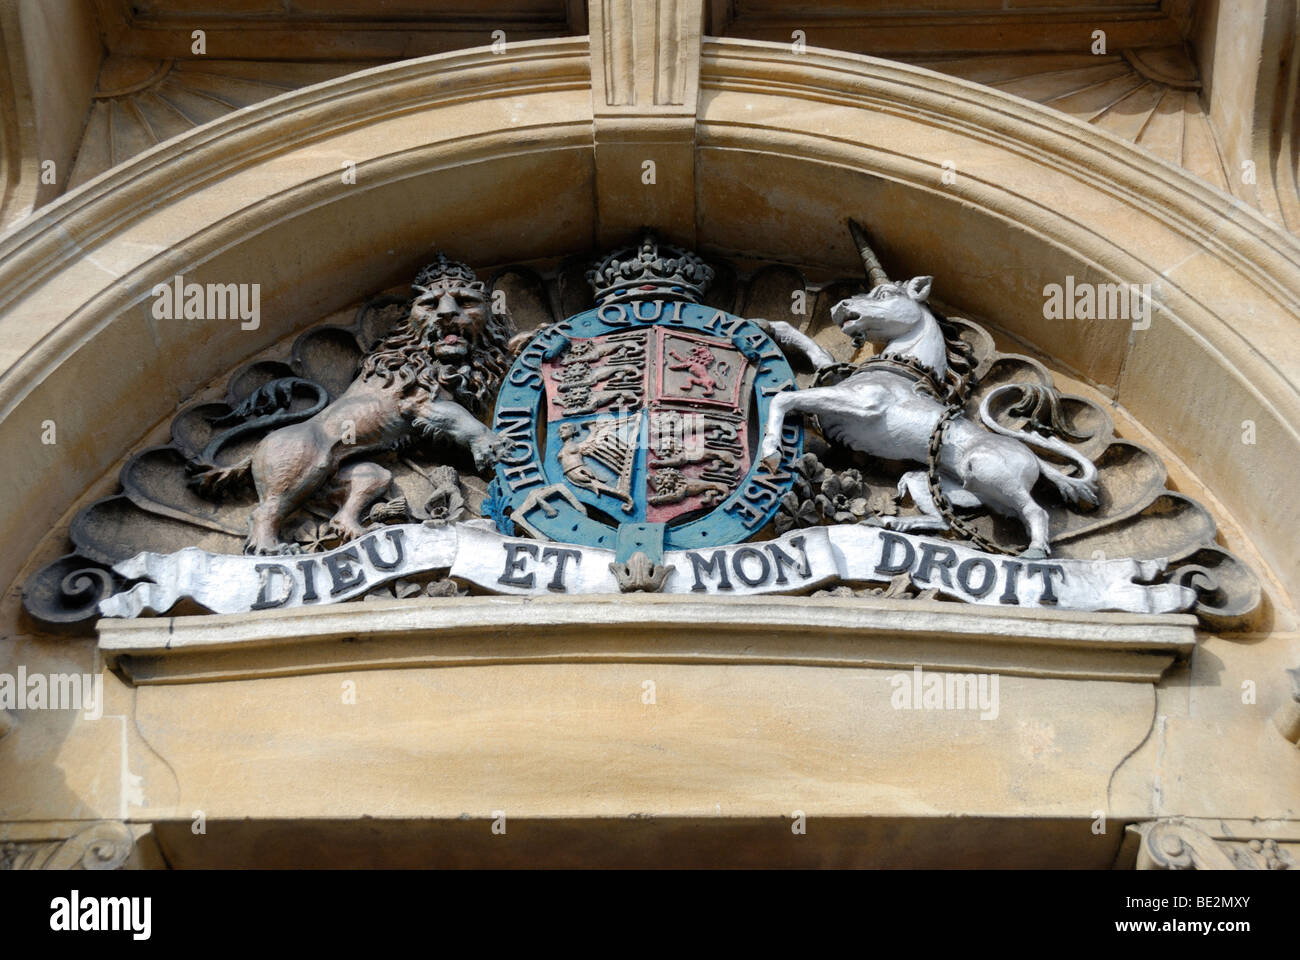 'Dieu et mon Droit' la devise et l'emblème de la monarchie britannique sur l'extérieur du bâtiment dans la région de High Wycombe, Buckinghamshire, Angleterre Banque D'Images